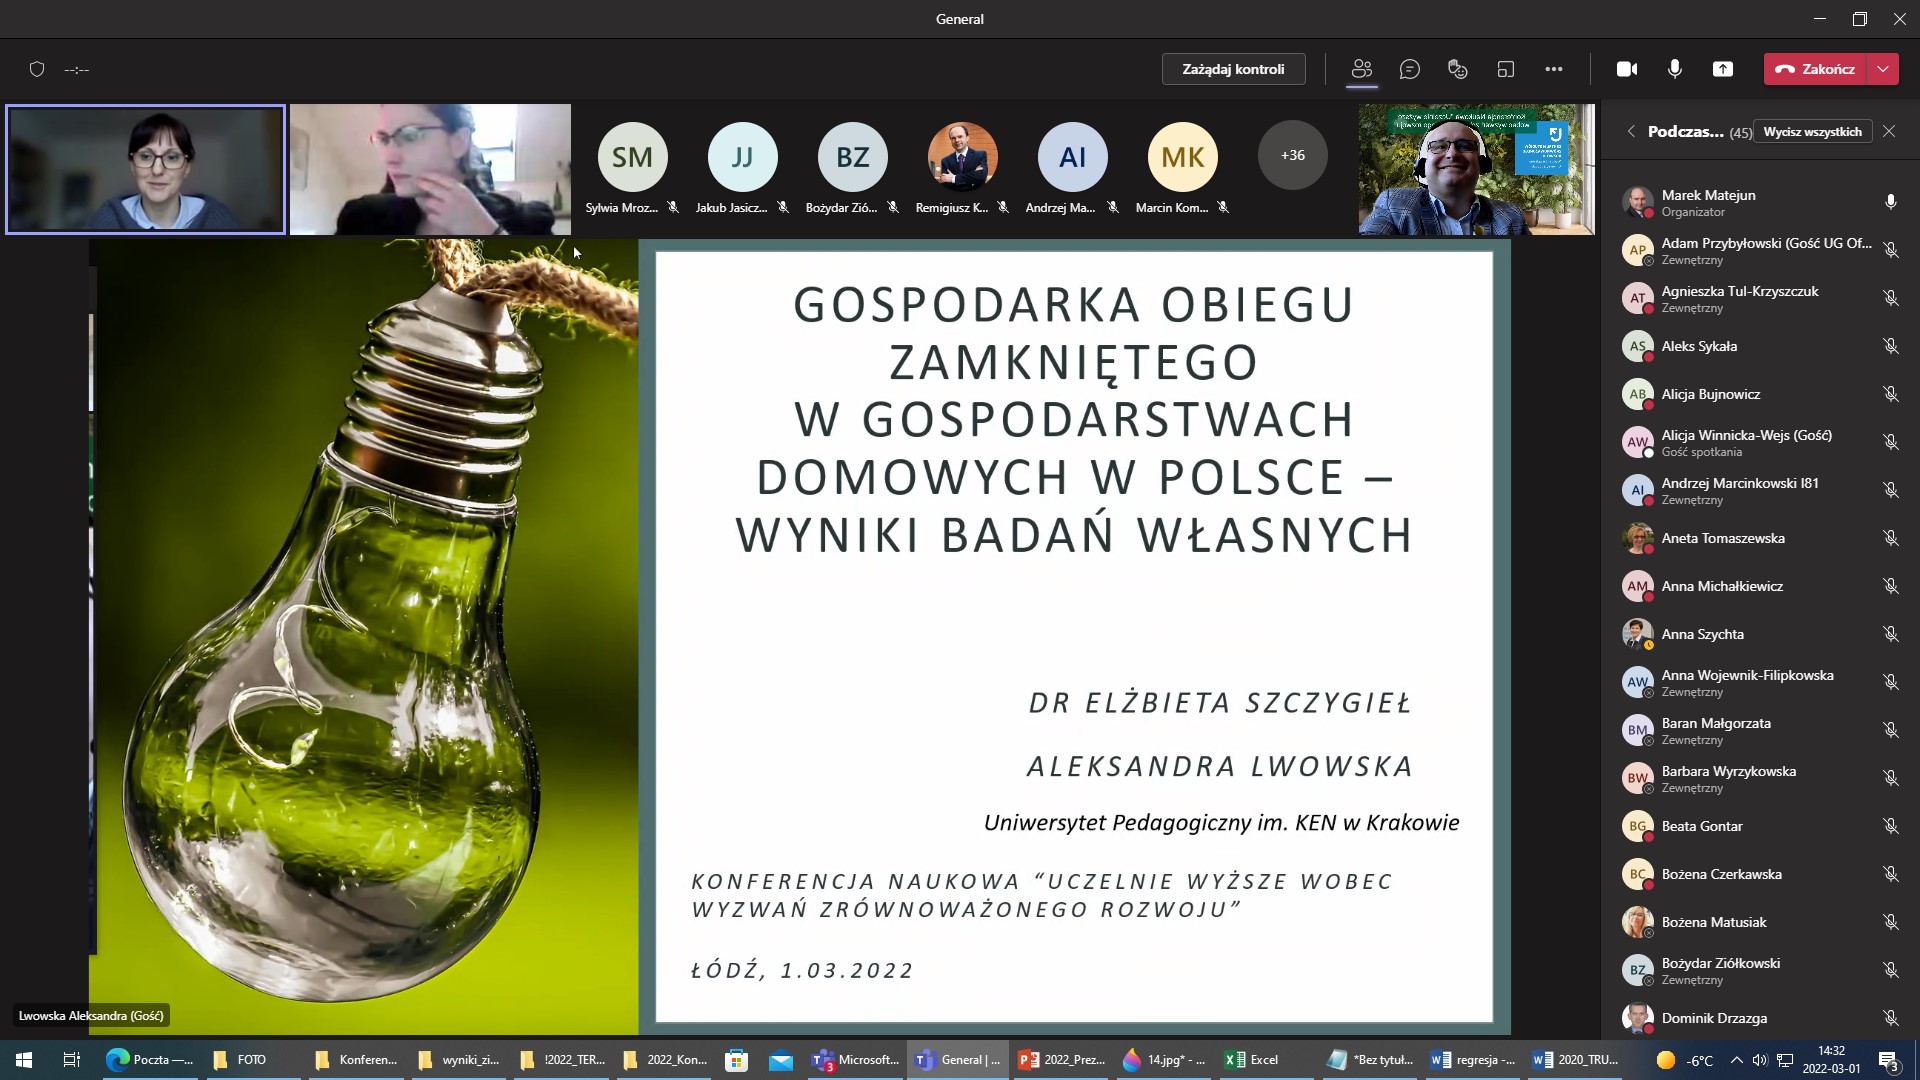 Zrzut z ekranu aplikacji MS Teams Ogólnopolskiej Konferencji Naukowej pt. „Uczelnie wyższe wobec wyzwań zrównoważonego rozwoju”, Wydział Zarządzania, Uniwersytet Łódzki, 01.03.2022